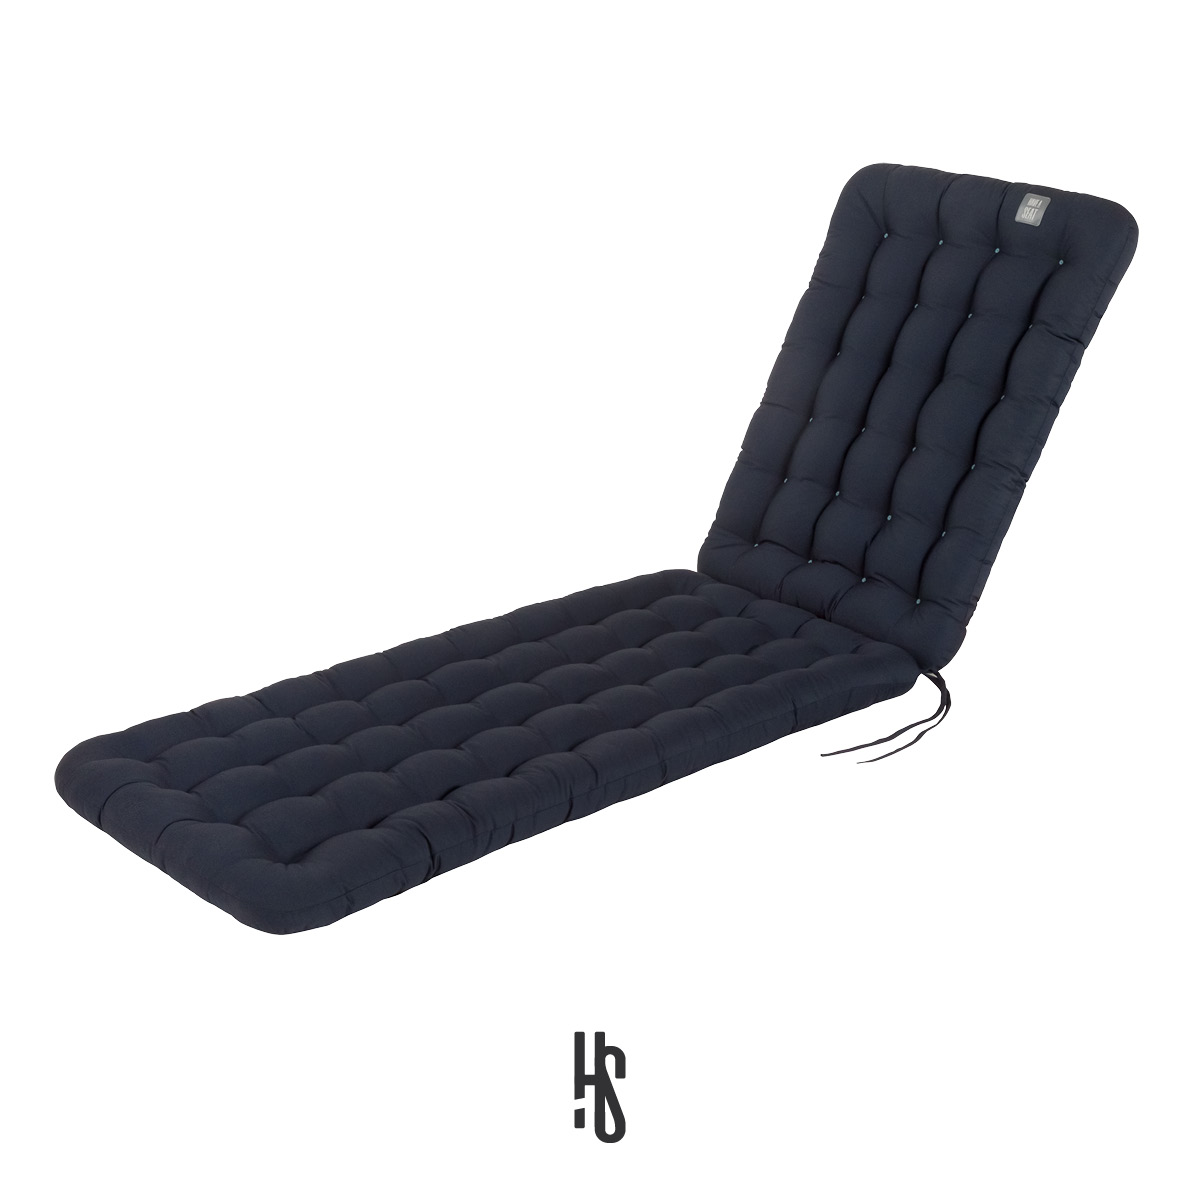 Auflage für Deckchair / Liegestuhl / Relaxstuhl dunkelblau mit Premium-Sitz-/Liegekomfort inkl. orthopädisches Outdoor Nackenkissen | HAVE A SEAT Living